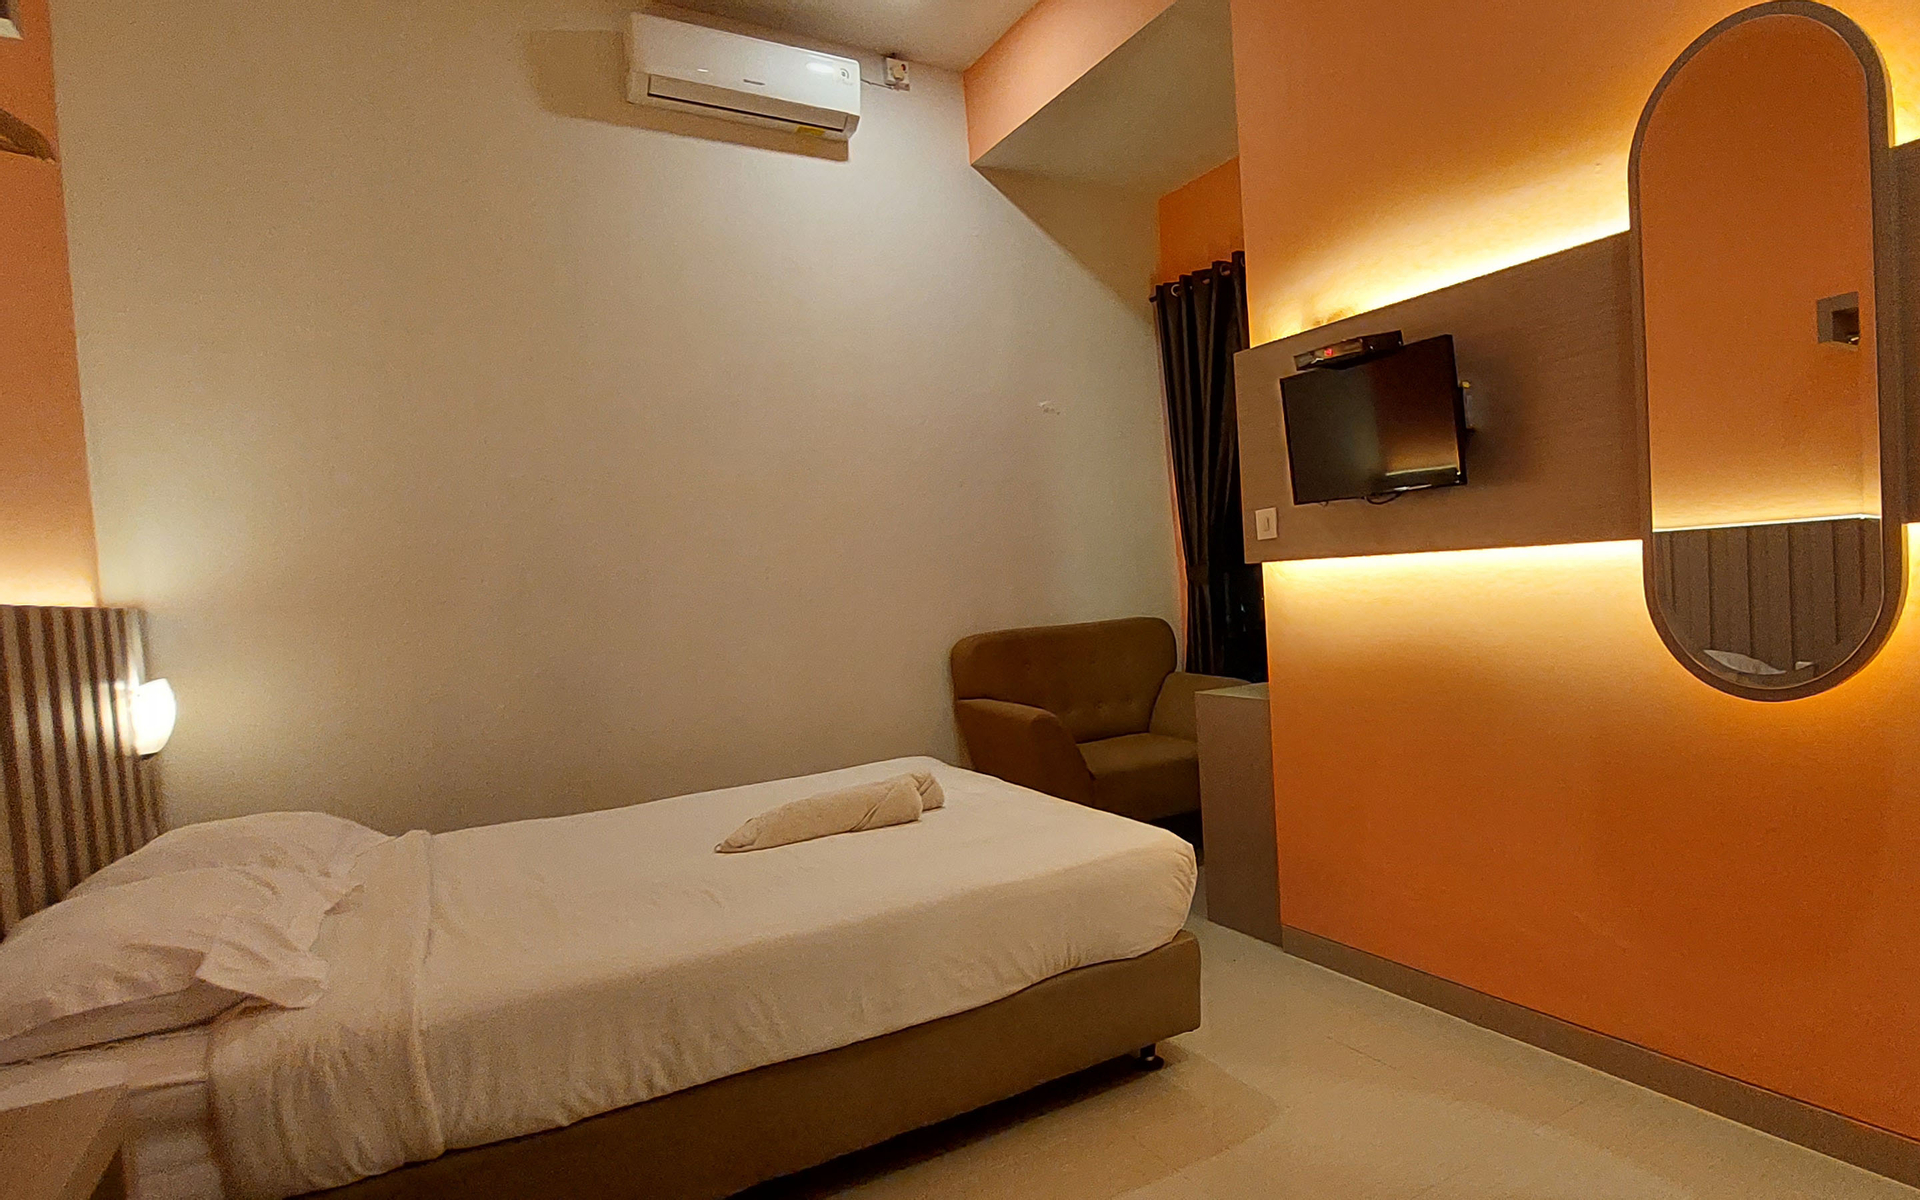 Bedroom 3, Oemah Djari Hotel Syariah, Salatiga